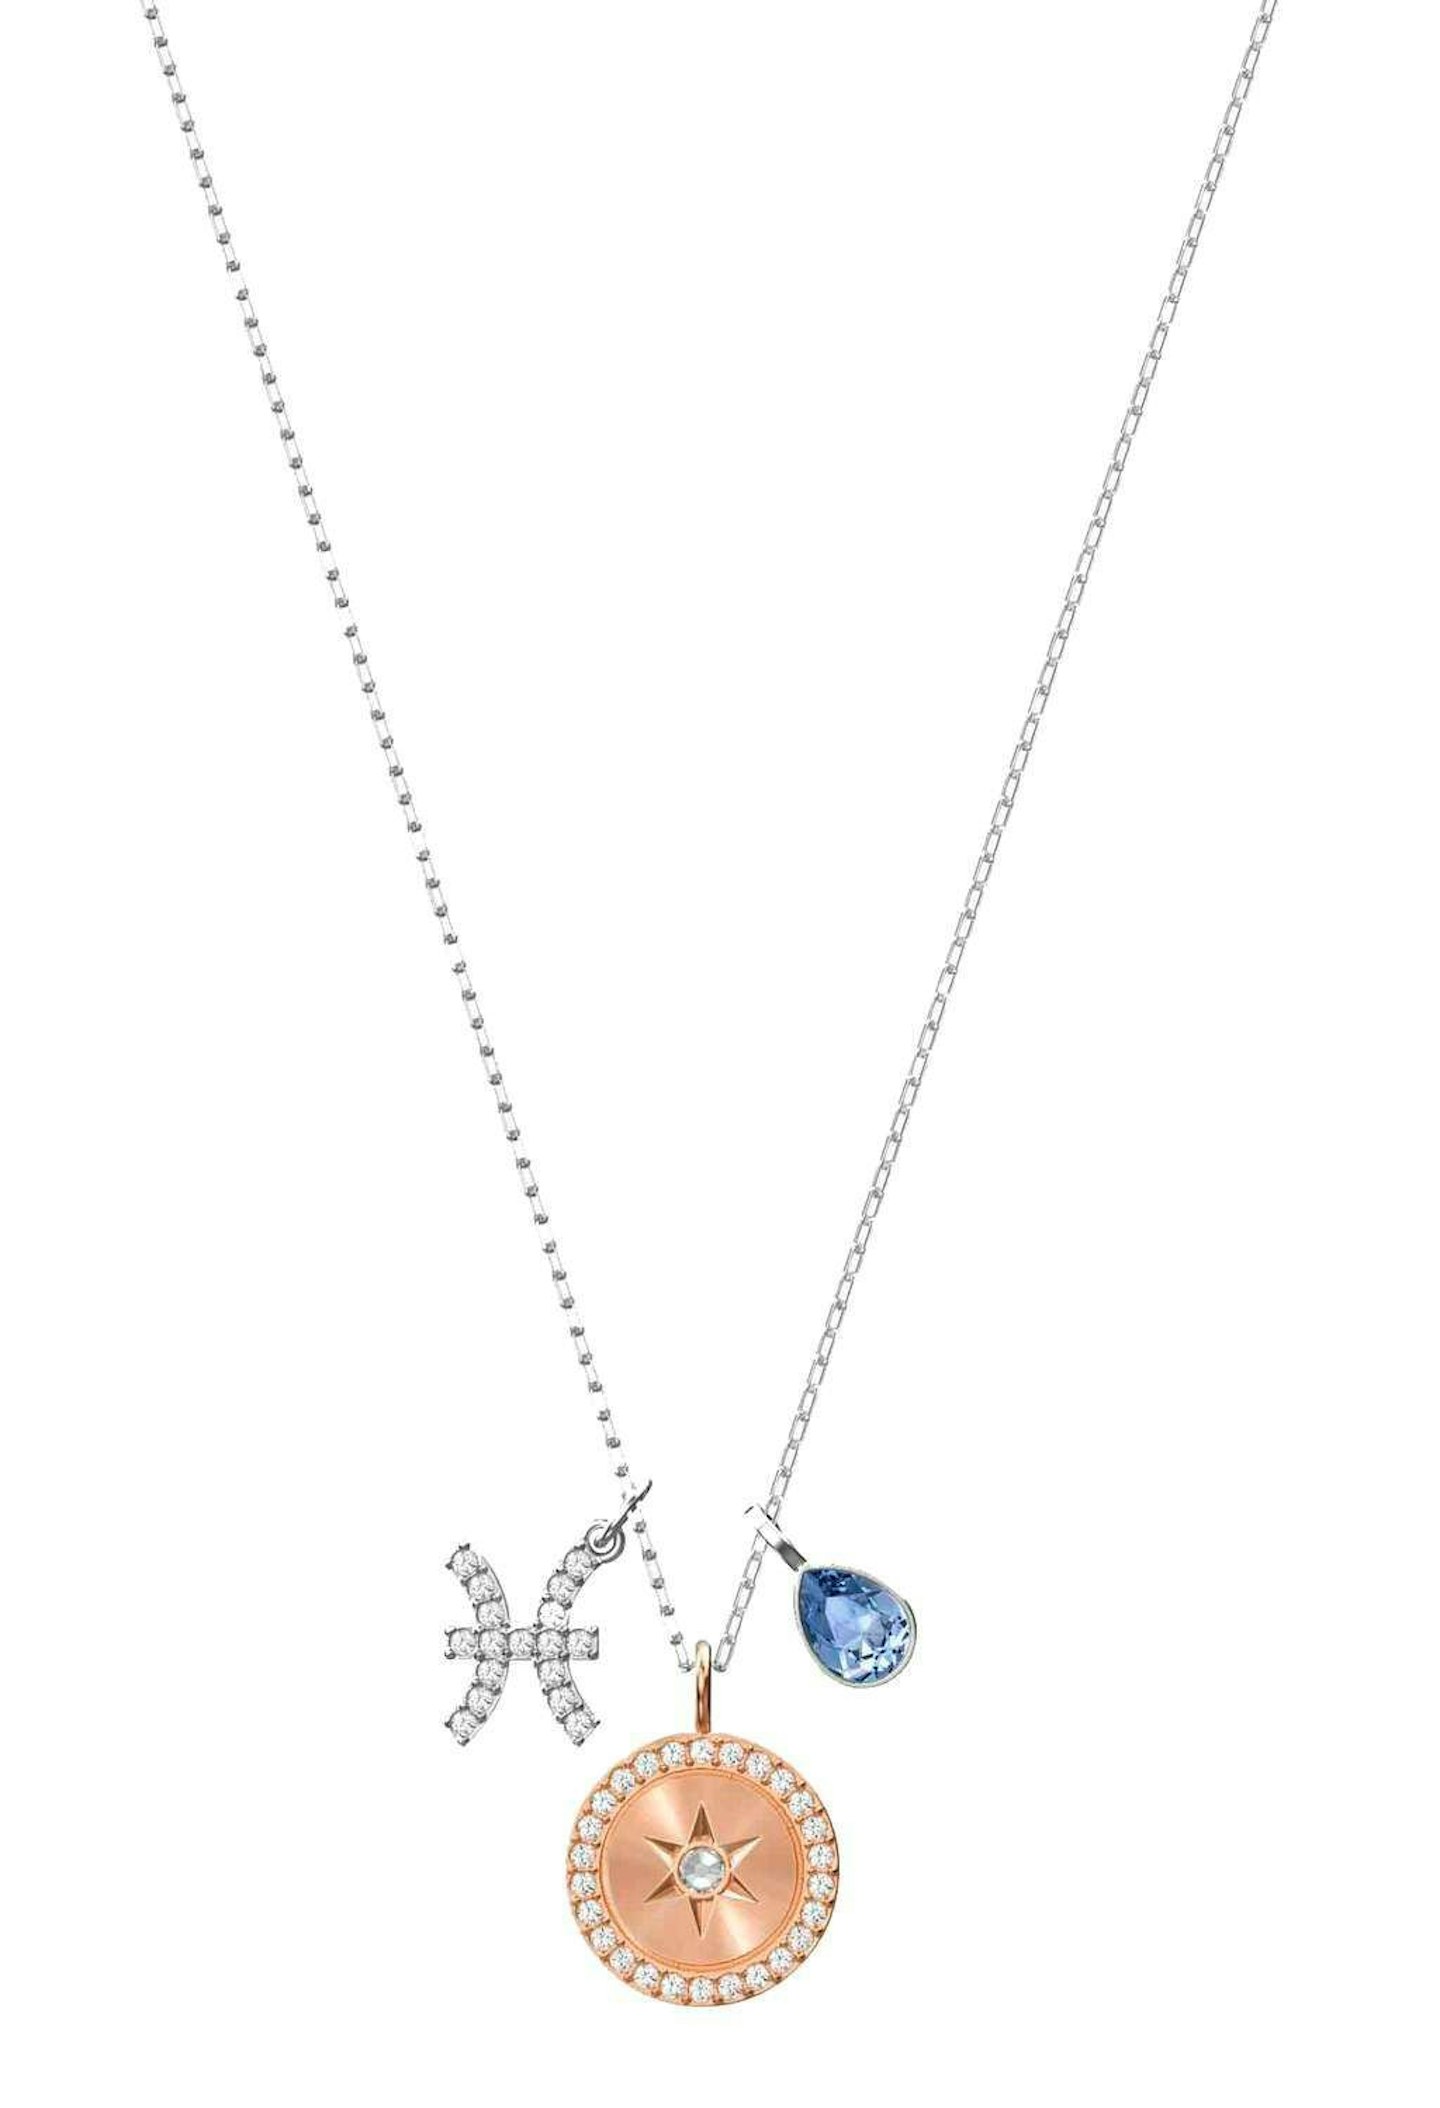 zodiac-necklace-fashion